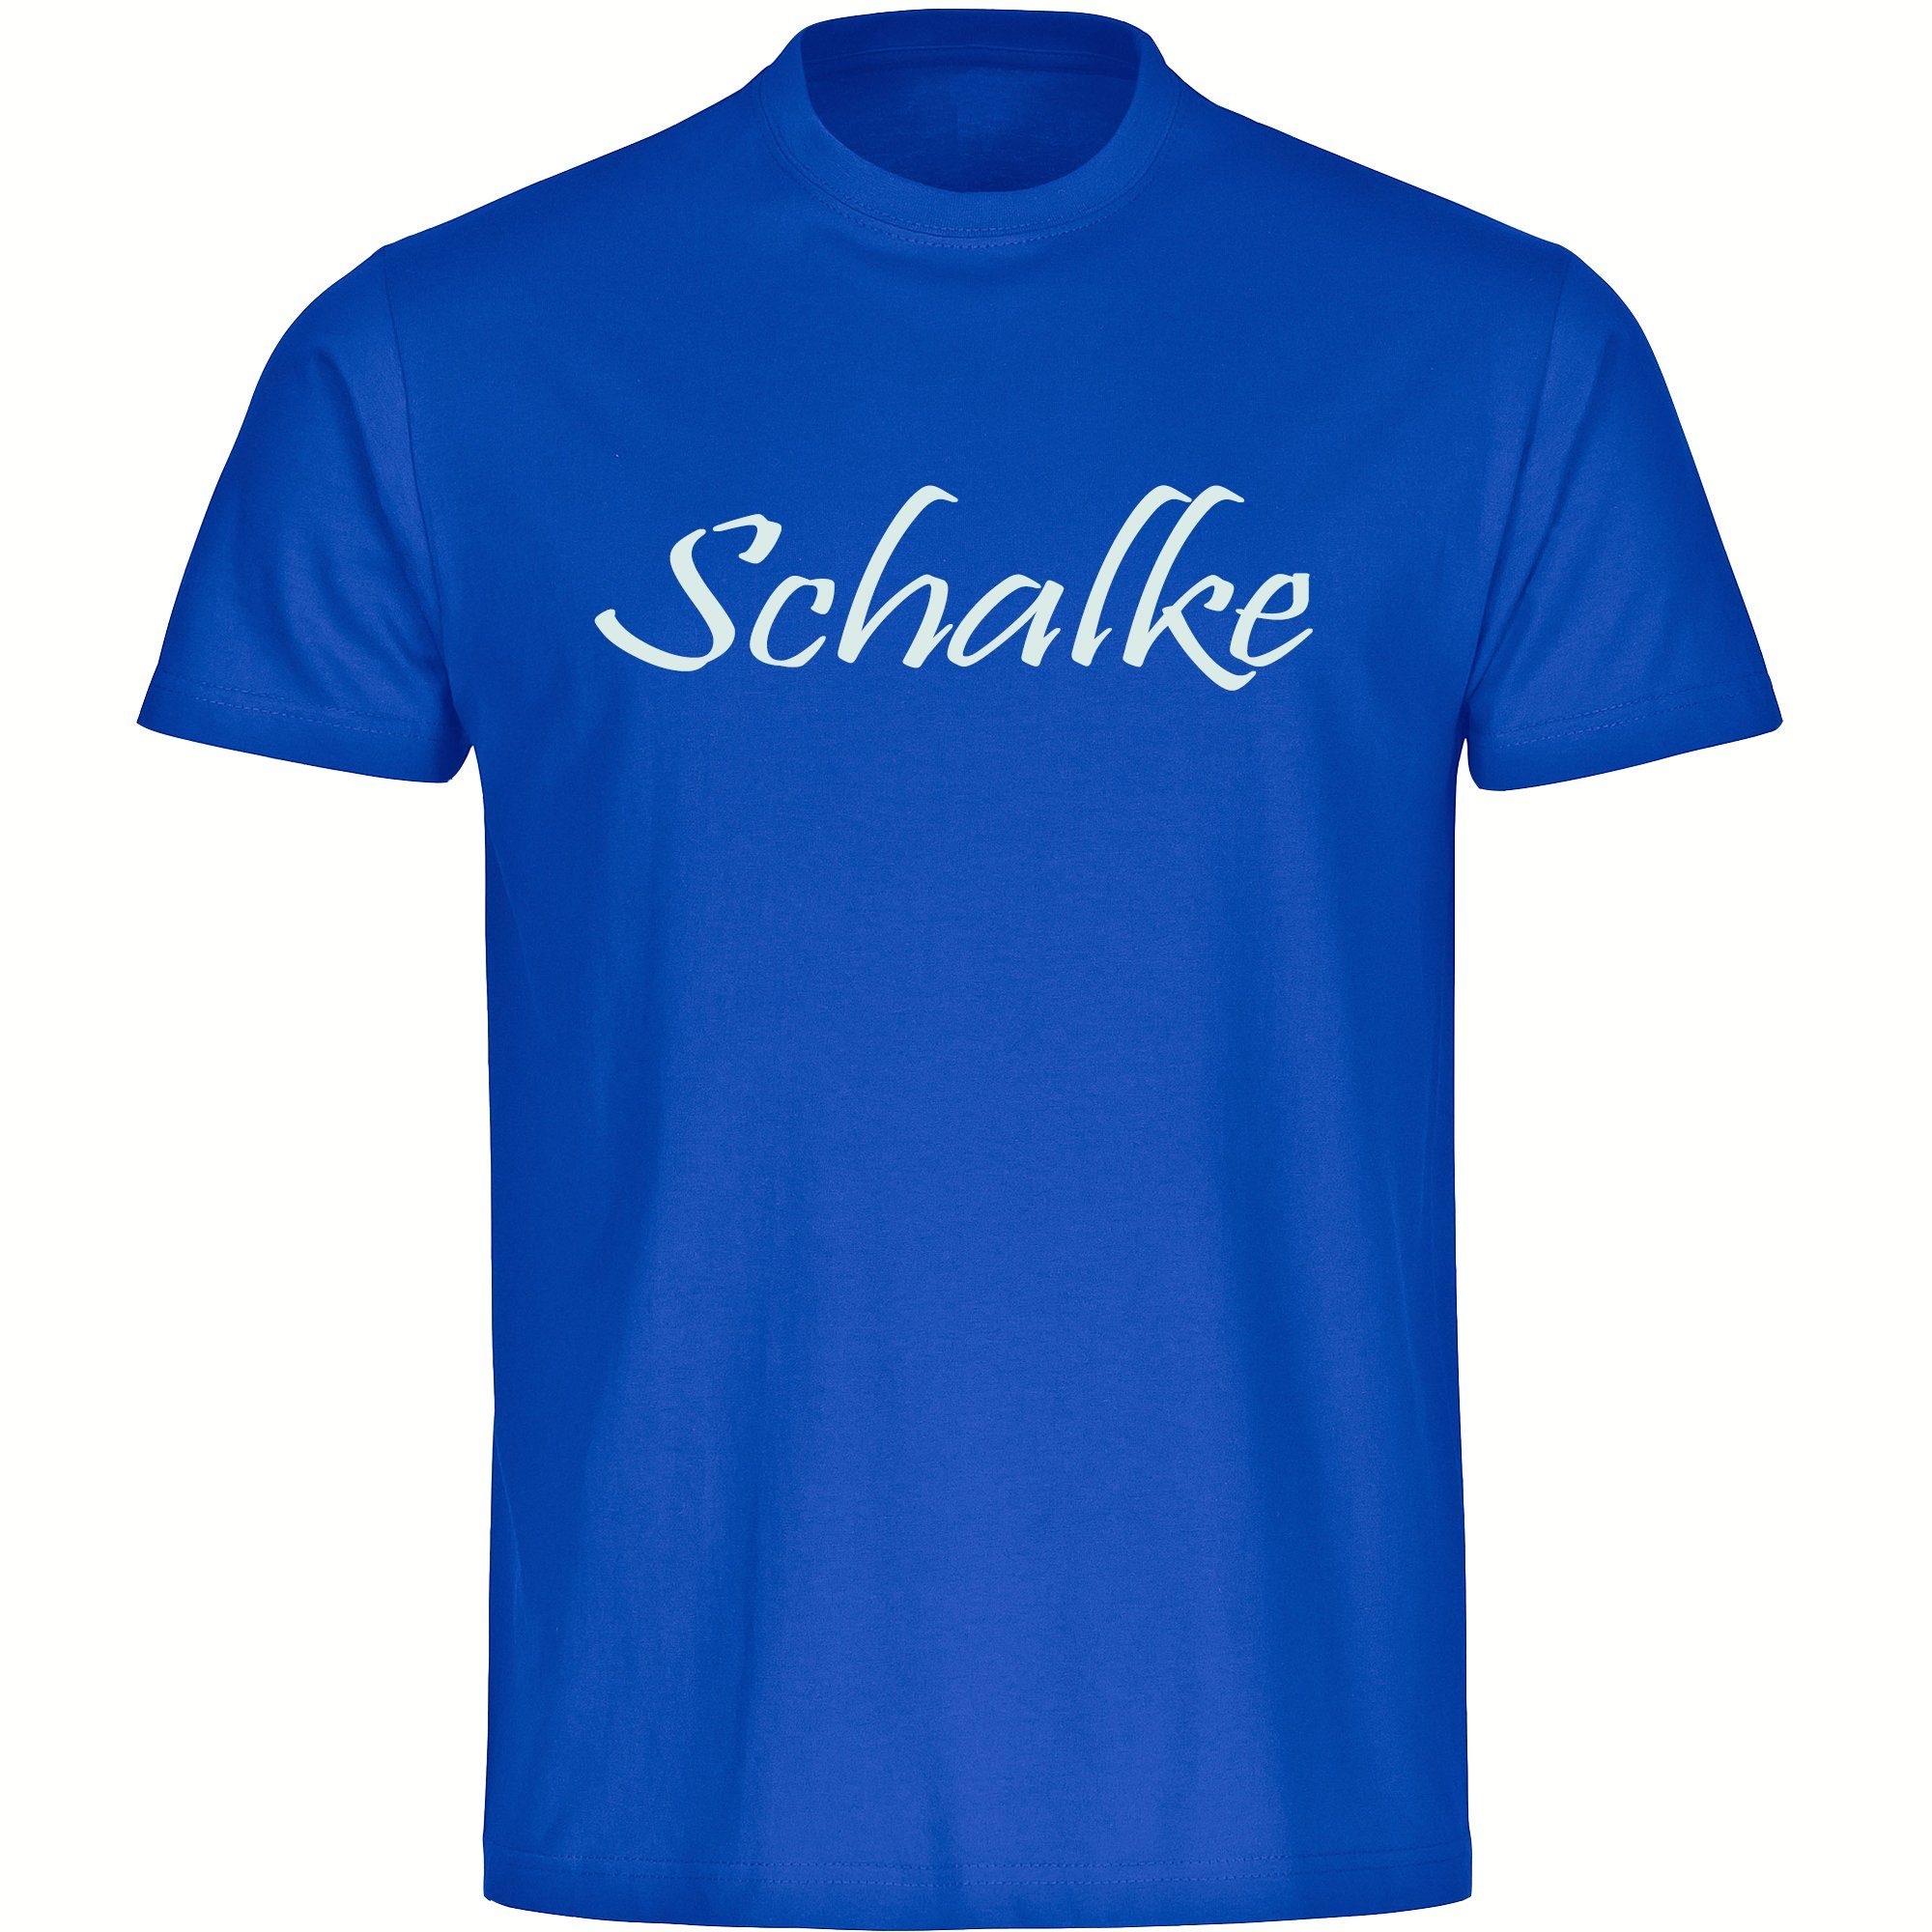 multifanshop T-Shirt Herren Schalke - Schriftzug - Männer